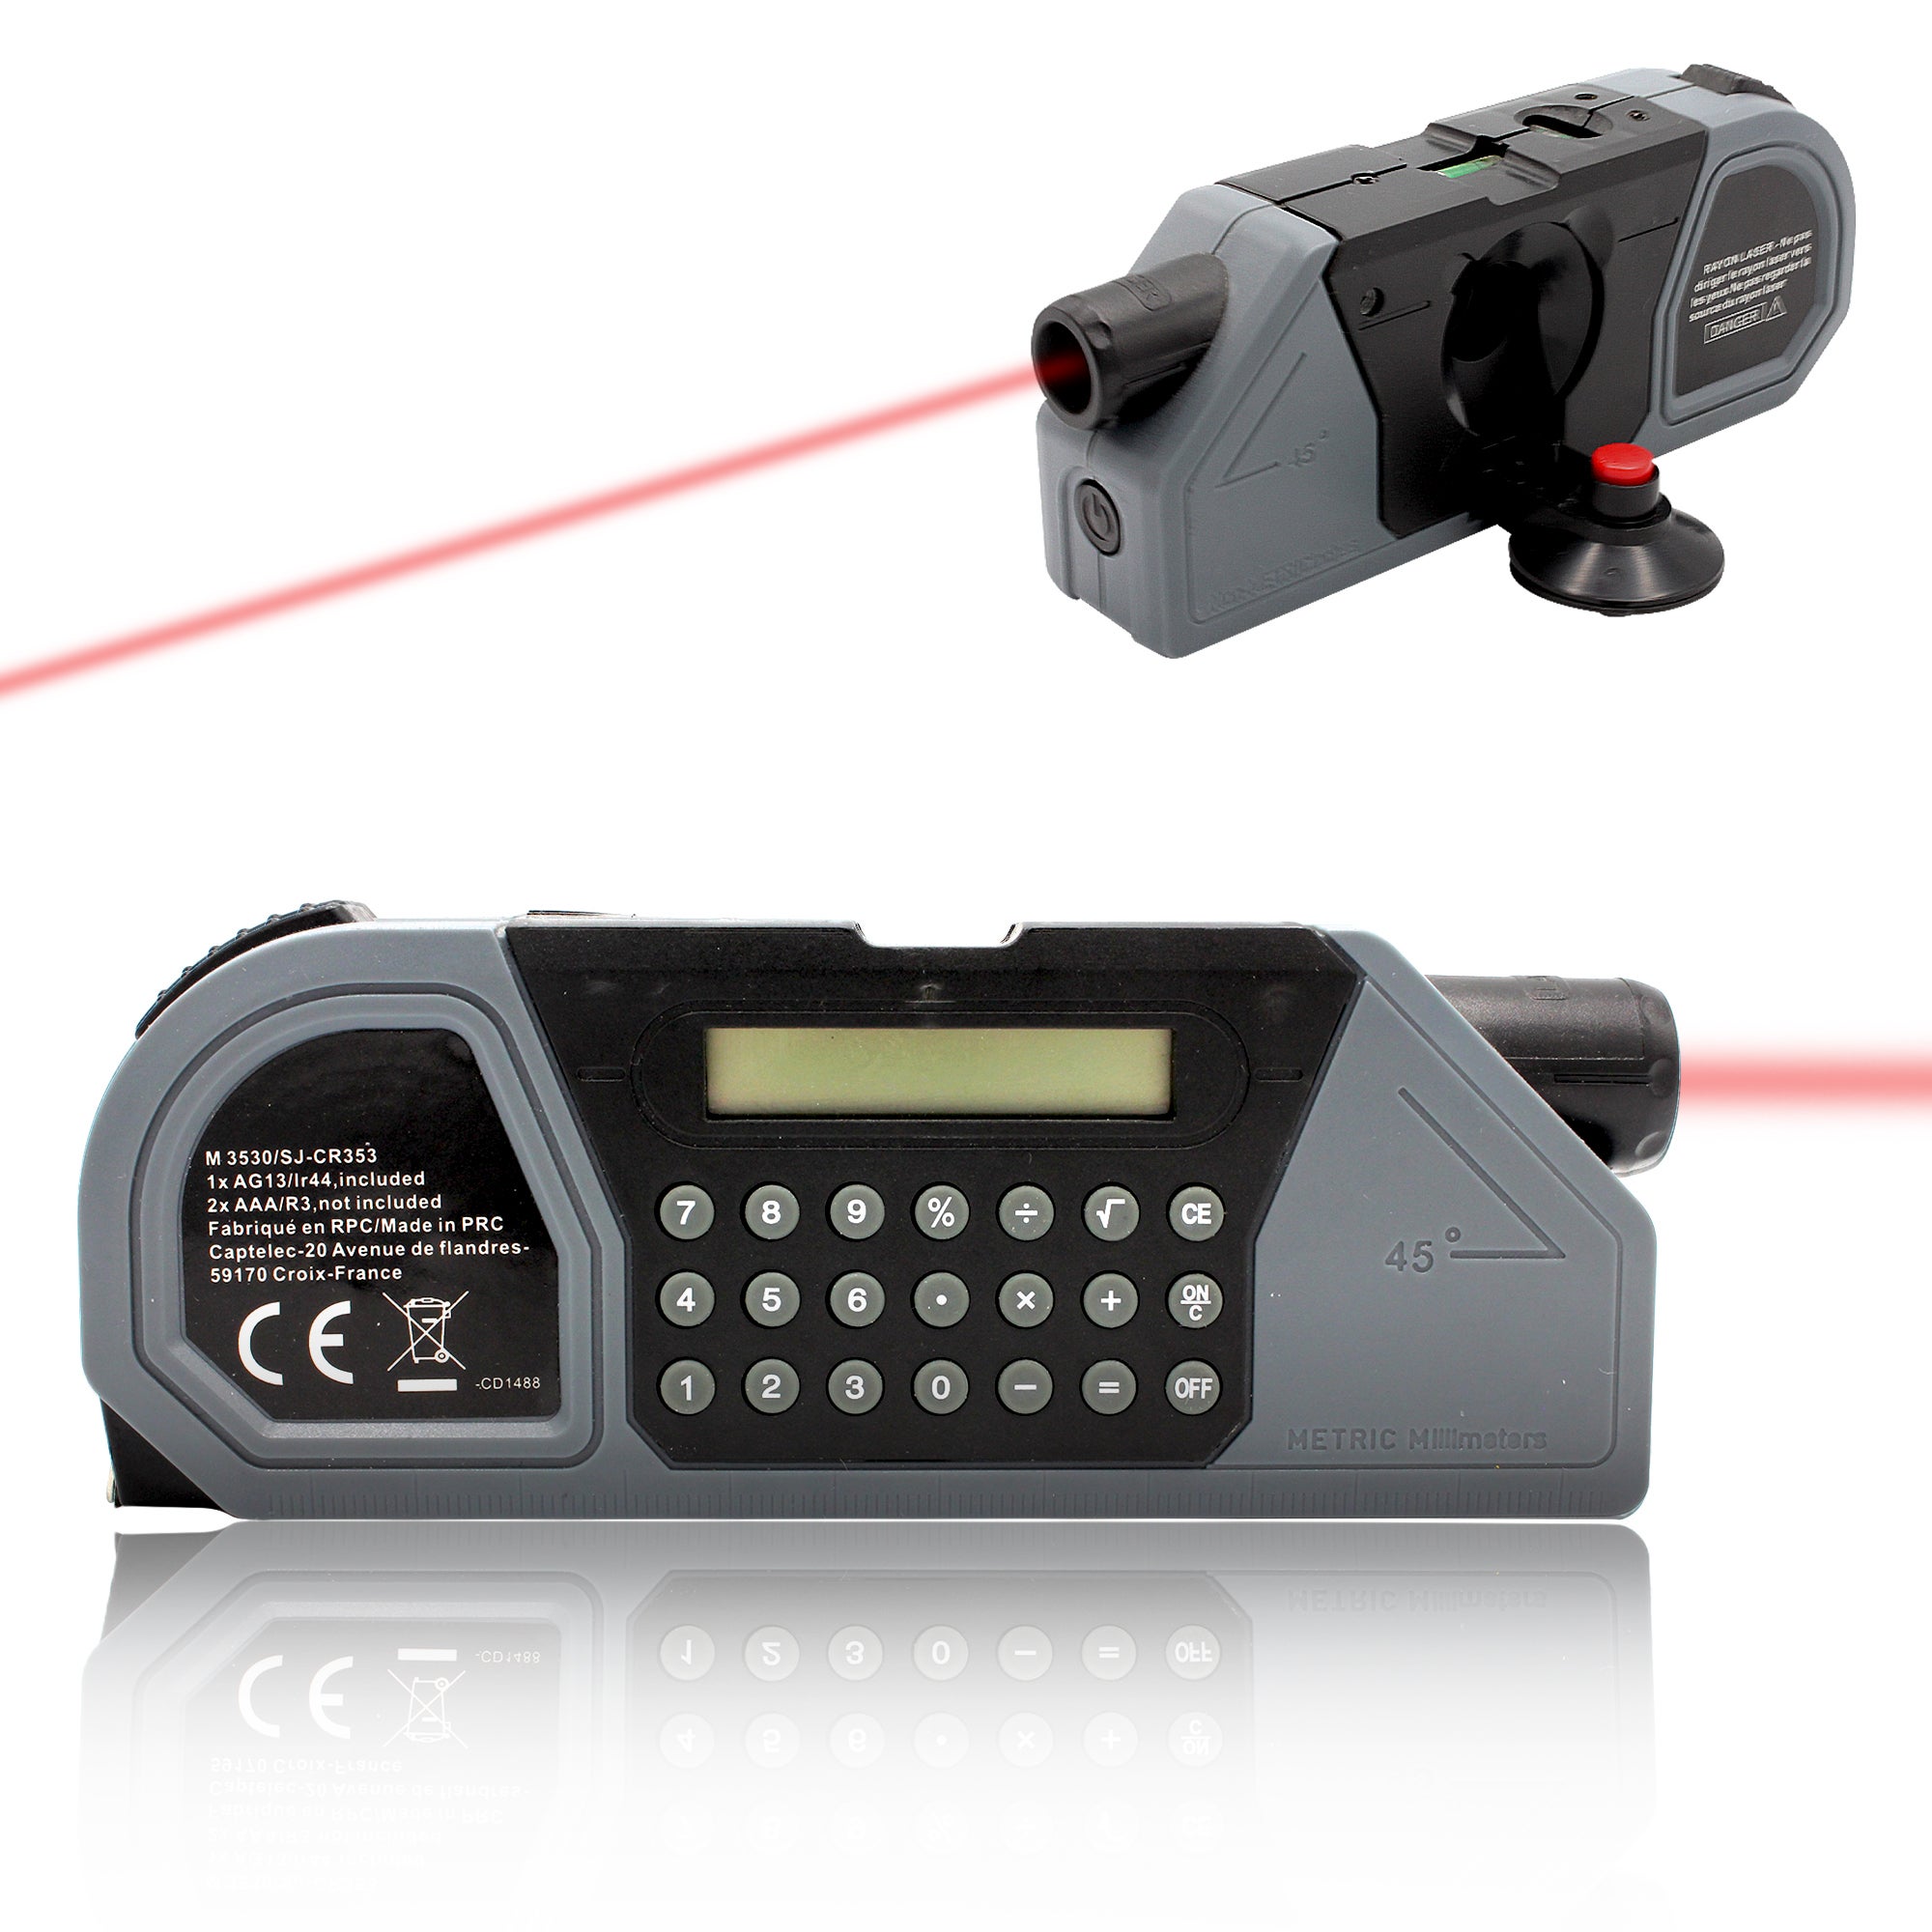 Metre 4 en 1 : Marqueur Laser avec Ventouse de Fixation + 2 Niveaux a Bulle  + Metre Ruban 2,5 Metres + Calculatrice - Grand Chiffres